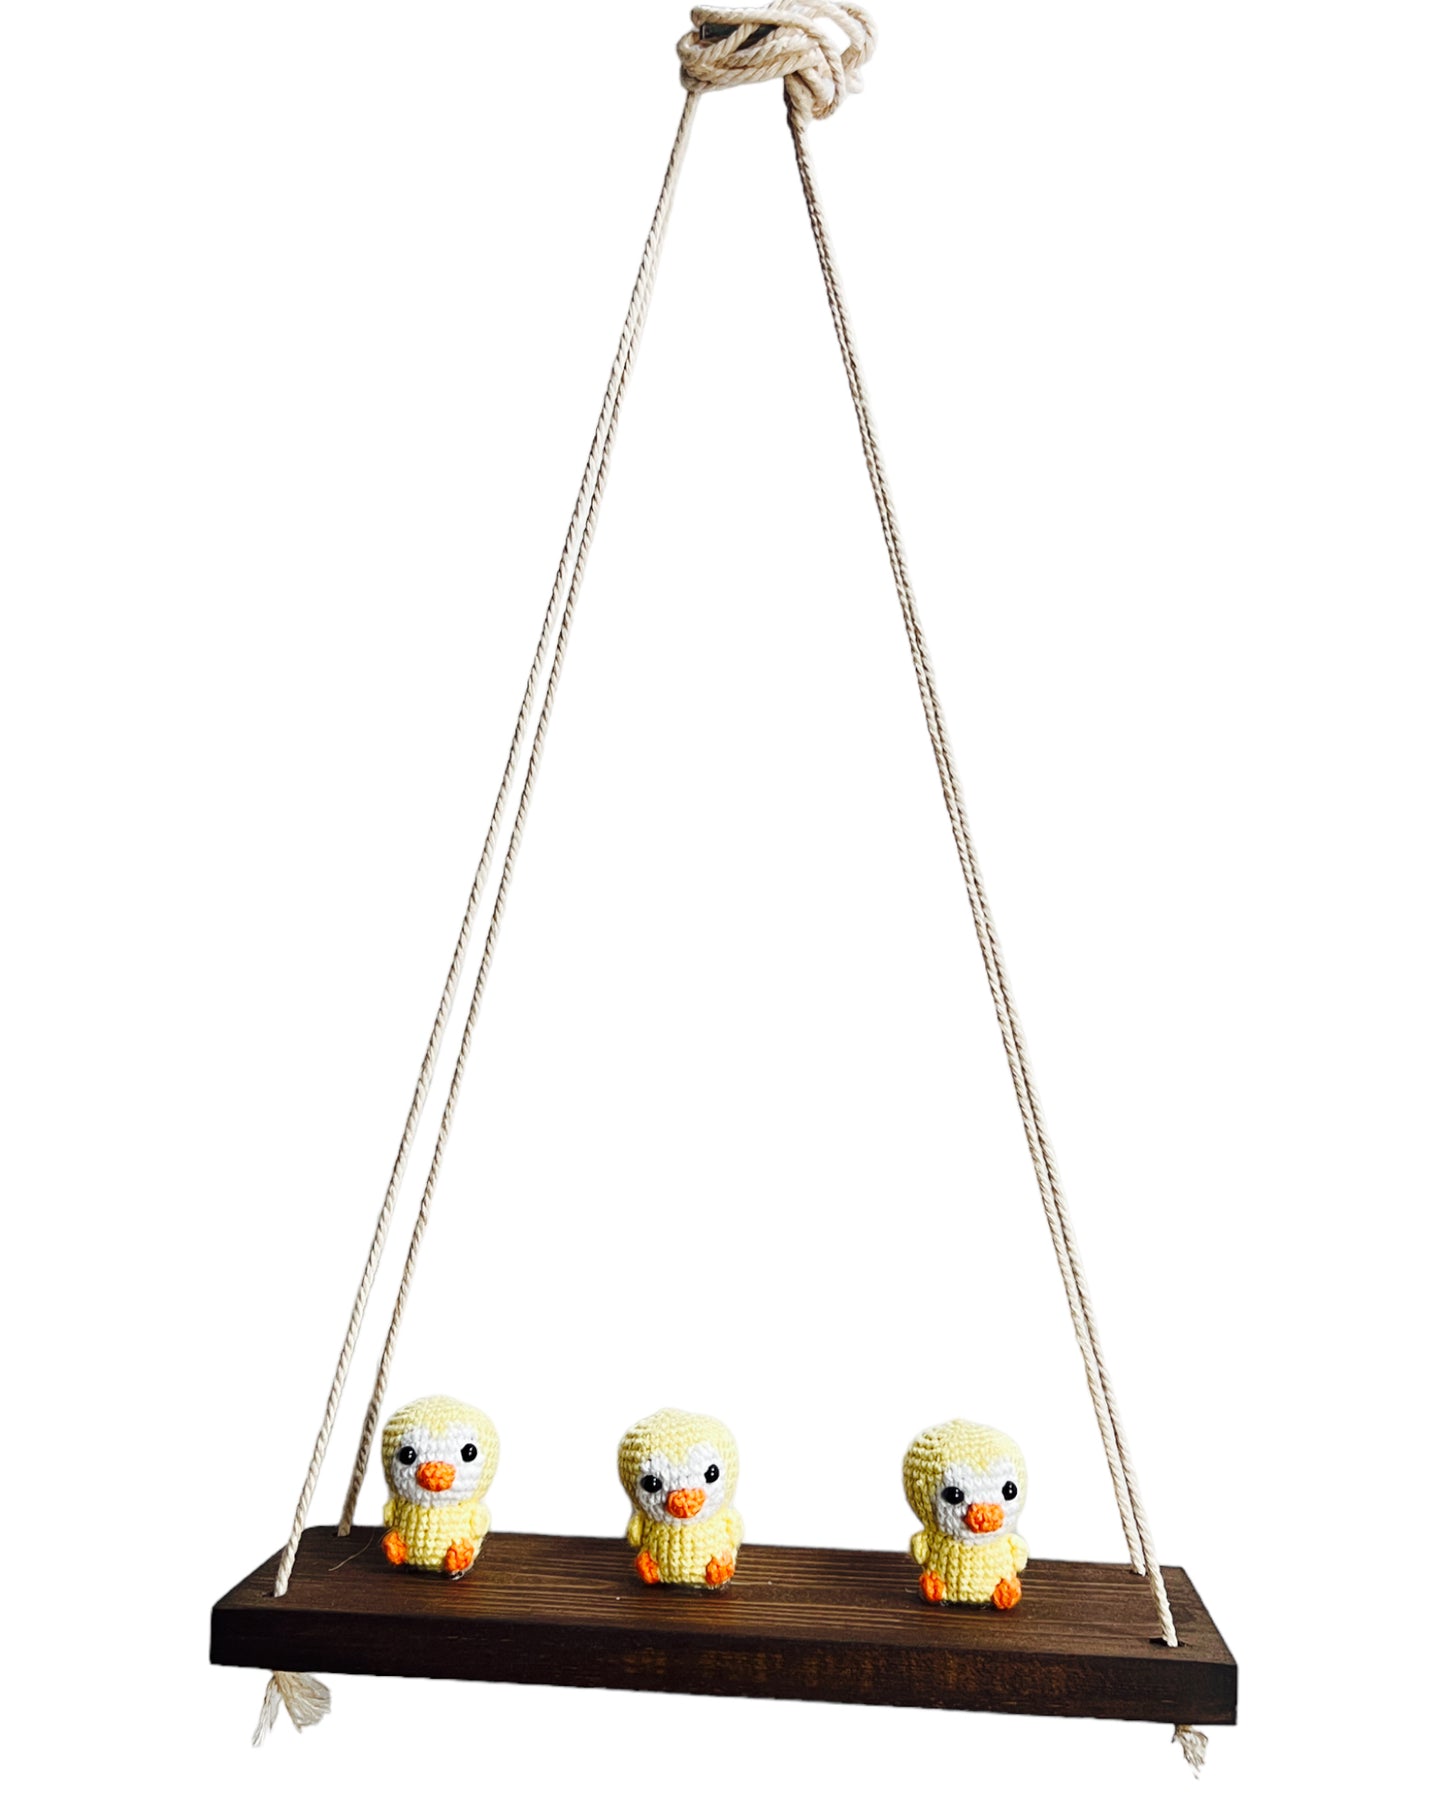 Ducks on a swing  Hanging Wall Shelf